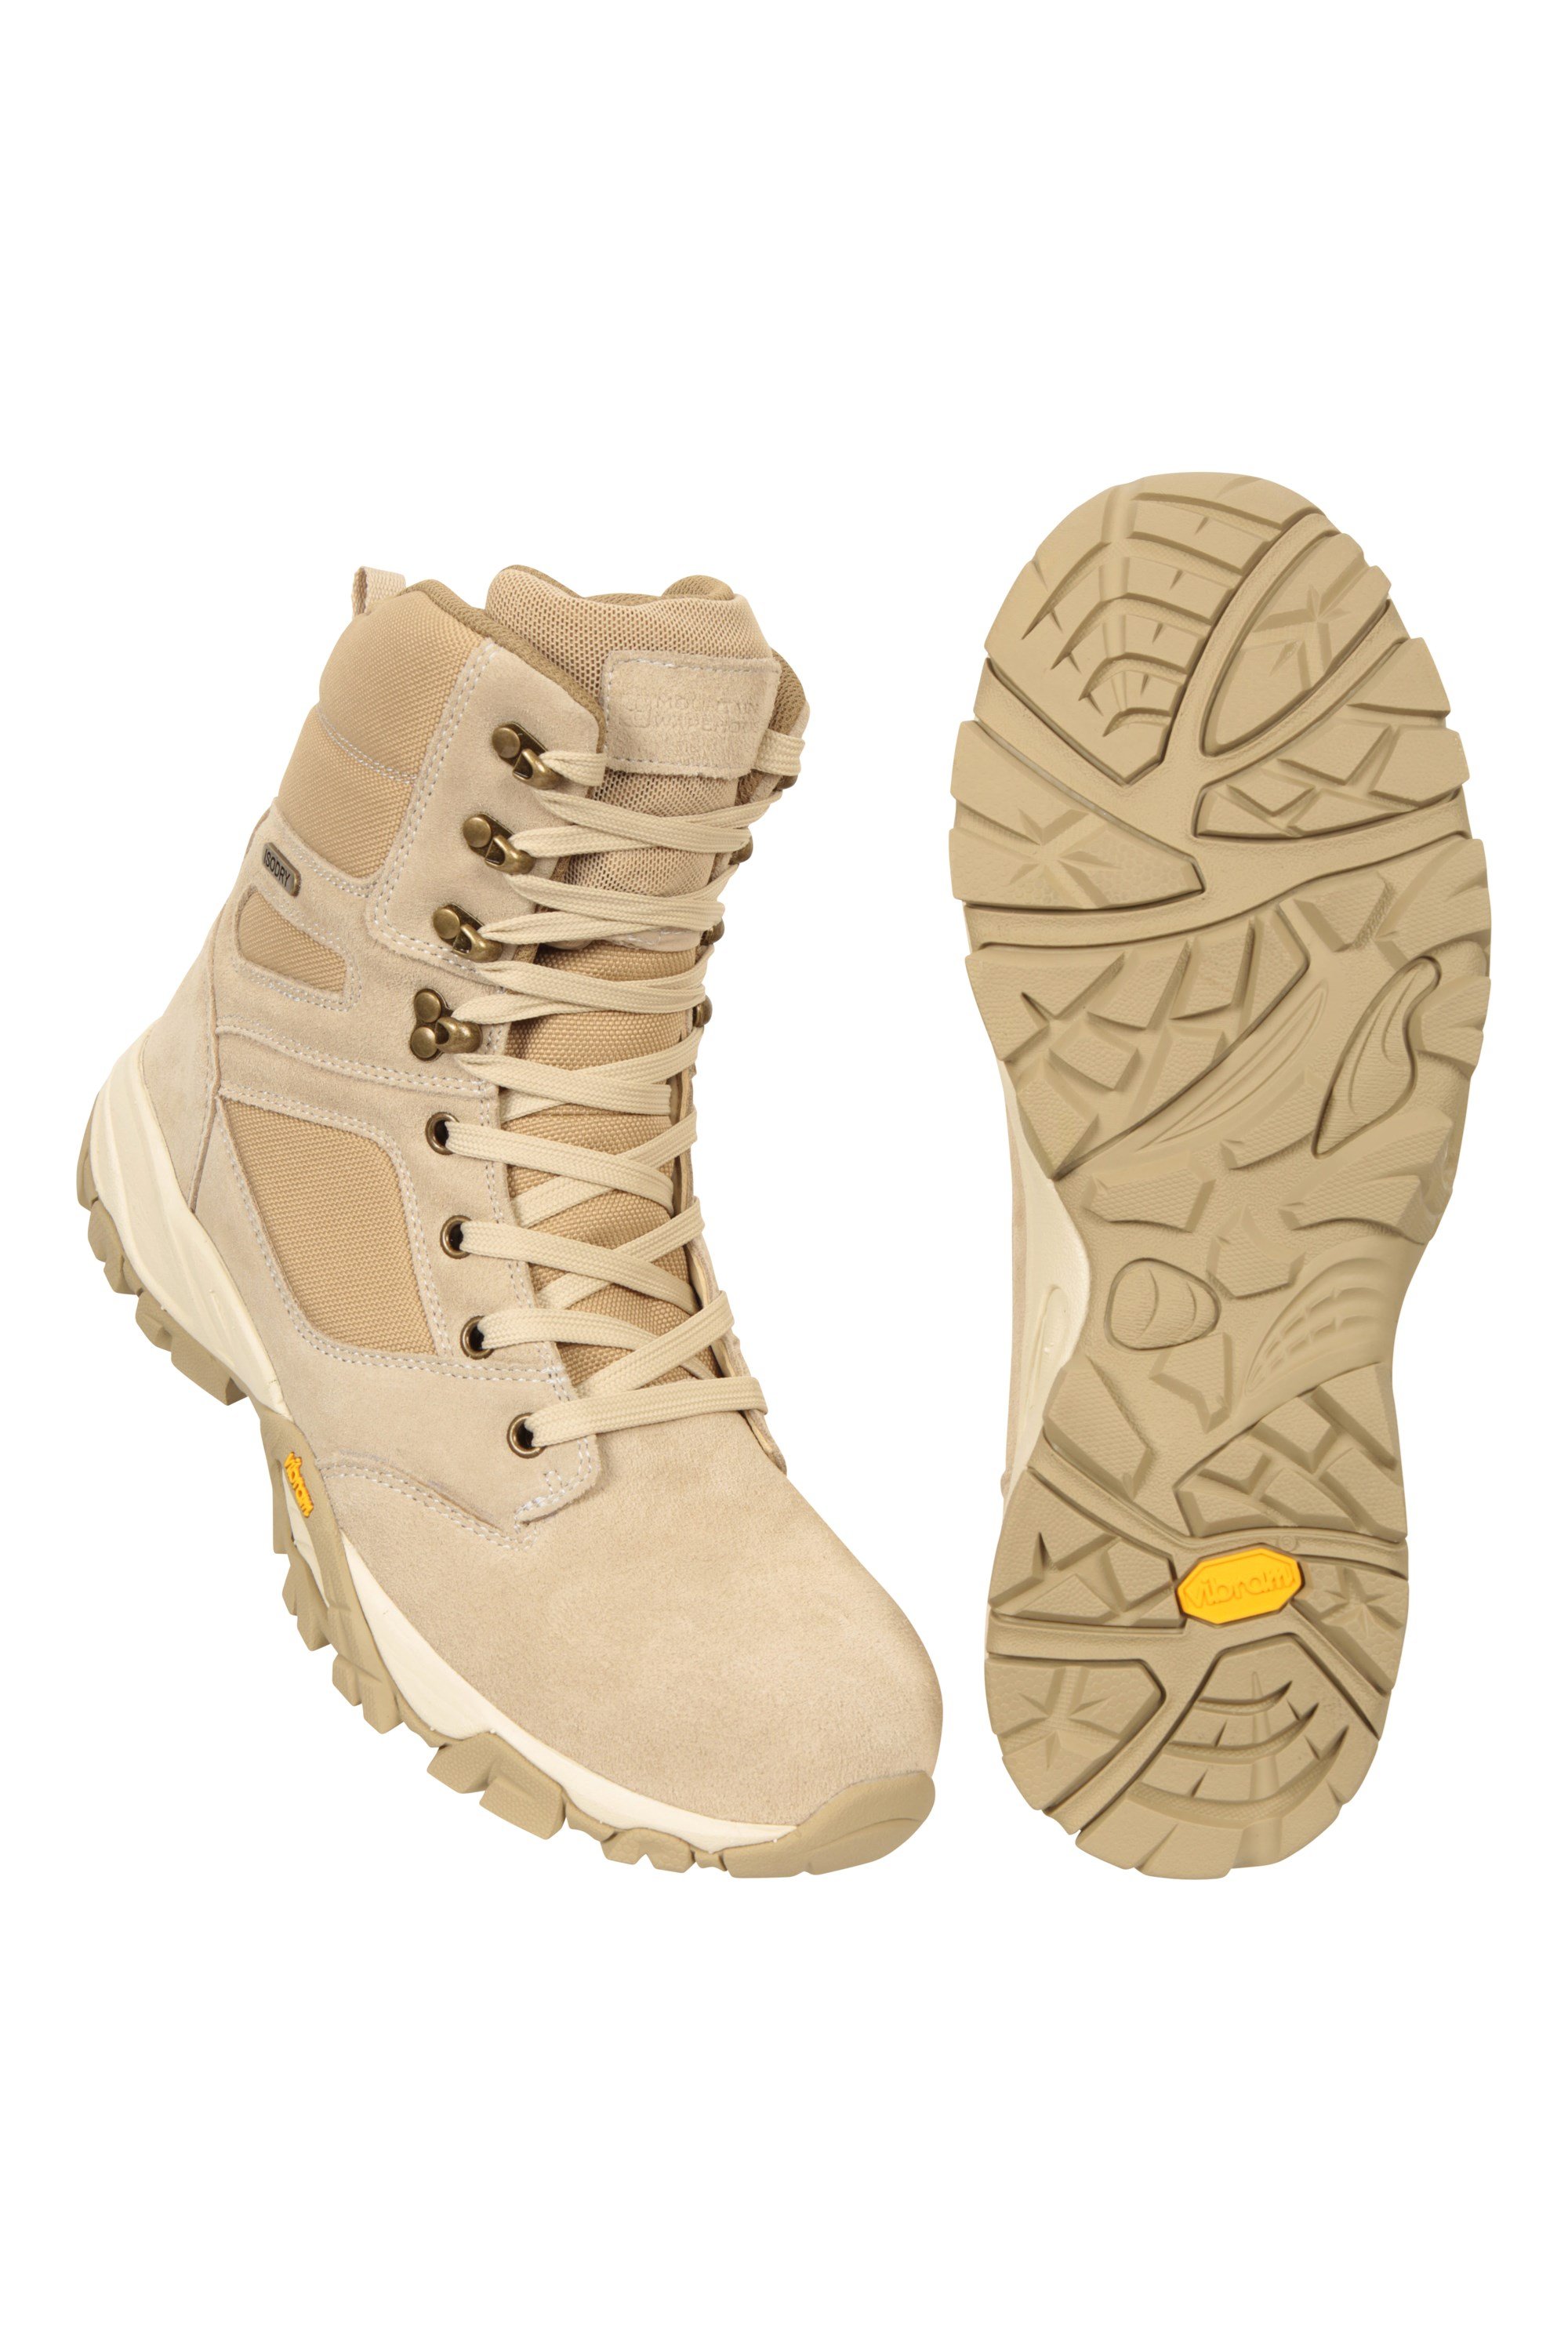 Vostock Extreme Desert - męskie buty z podeszwą Vibram - Beige